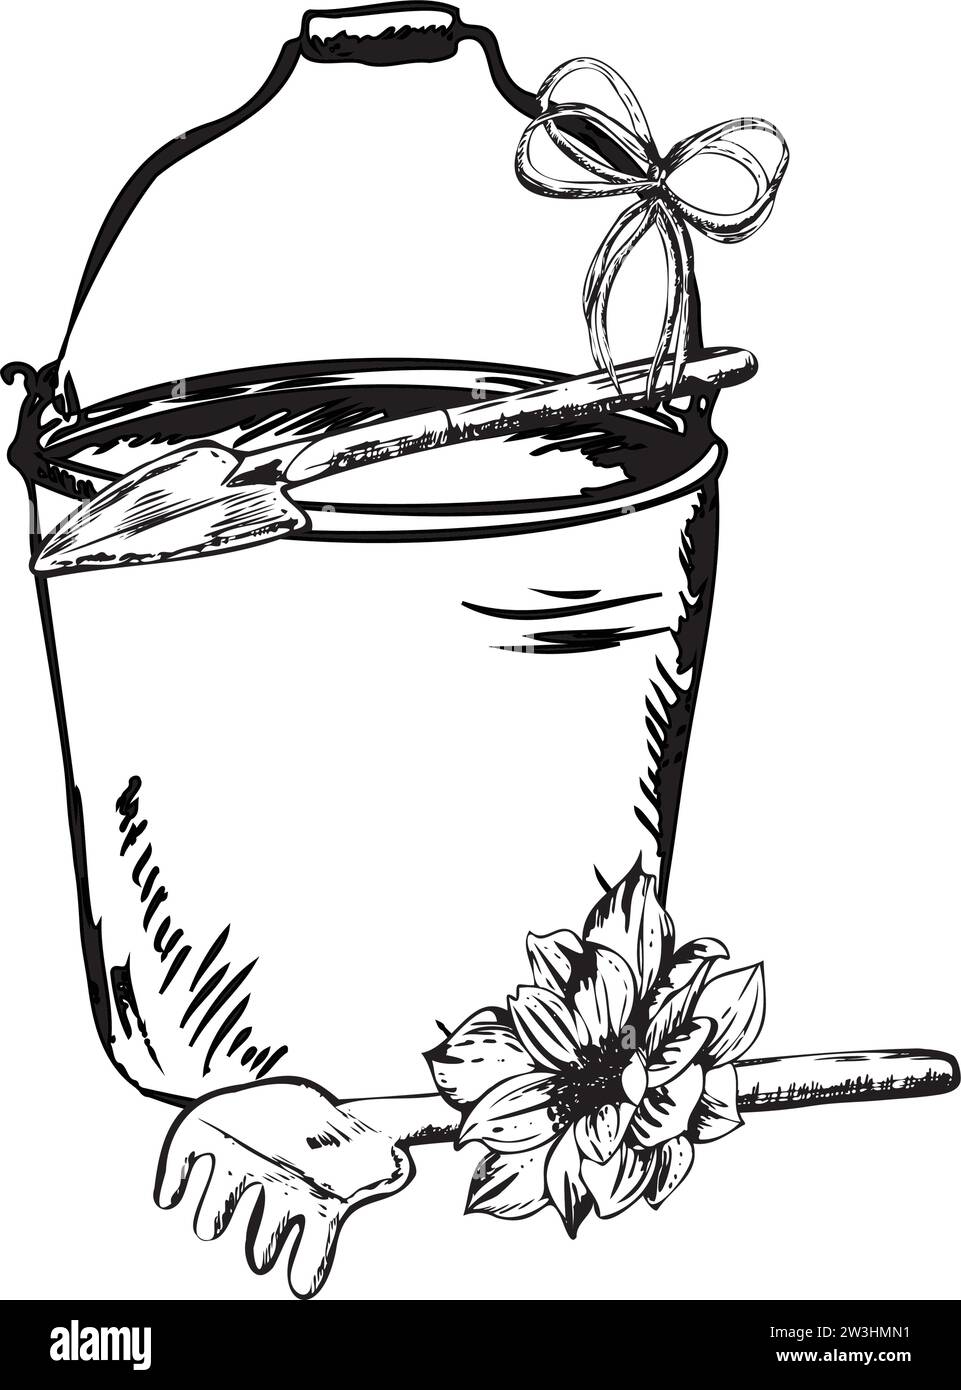 Handgezeichnete Tintendarstellung. Ein Eimer mit Gartenrechen und Kelle mit einer Blume. Vektorabbildung Stock Vektor